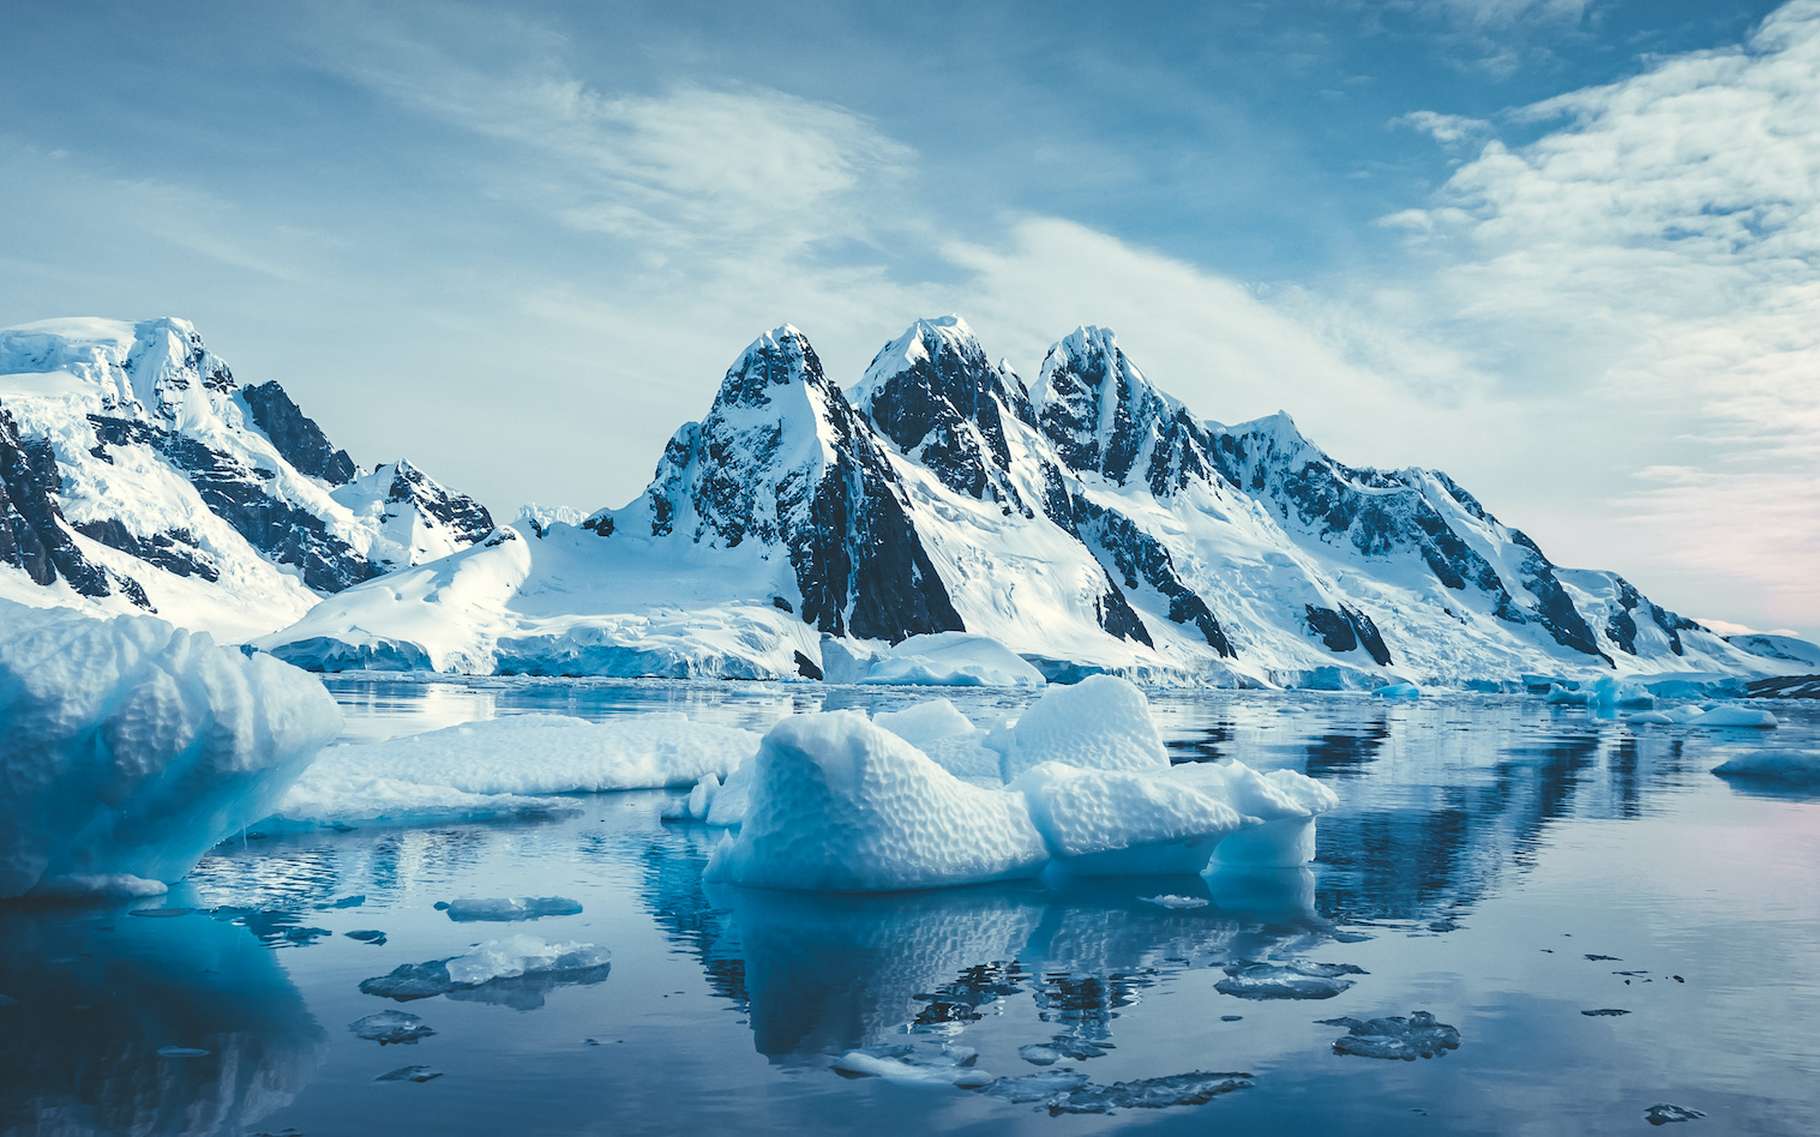 Des chercheurs montrent que le courant circumpolaire antarctique s’accélère sous l’effet du réchauffement climatique. Une accélération qui pourrait… accélérer le réchauffement climatique ! © Goinyk, Adobe Stock